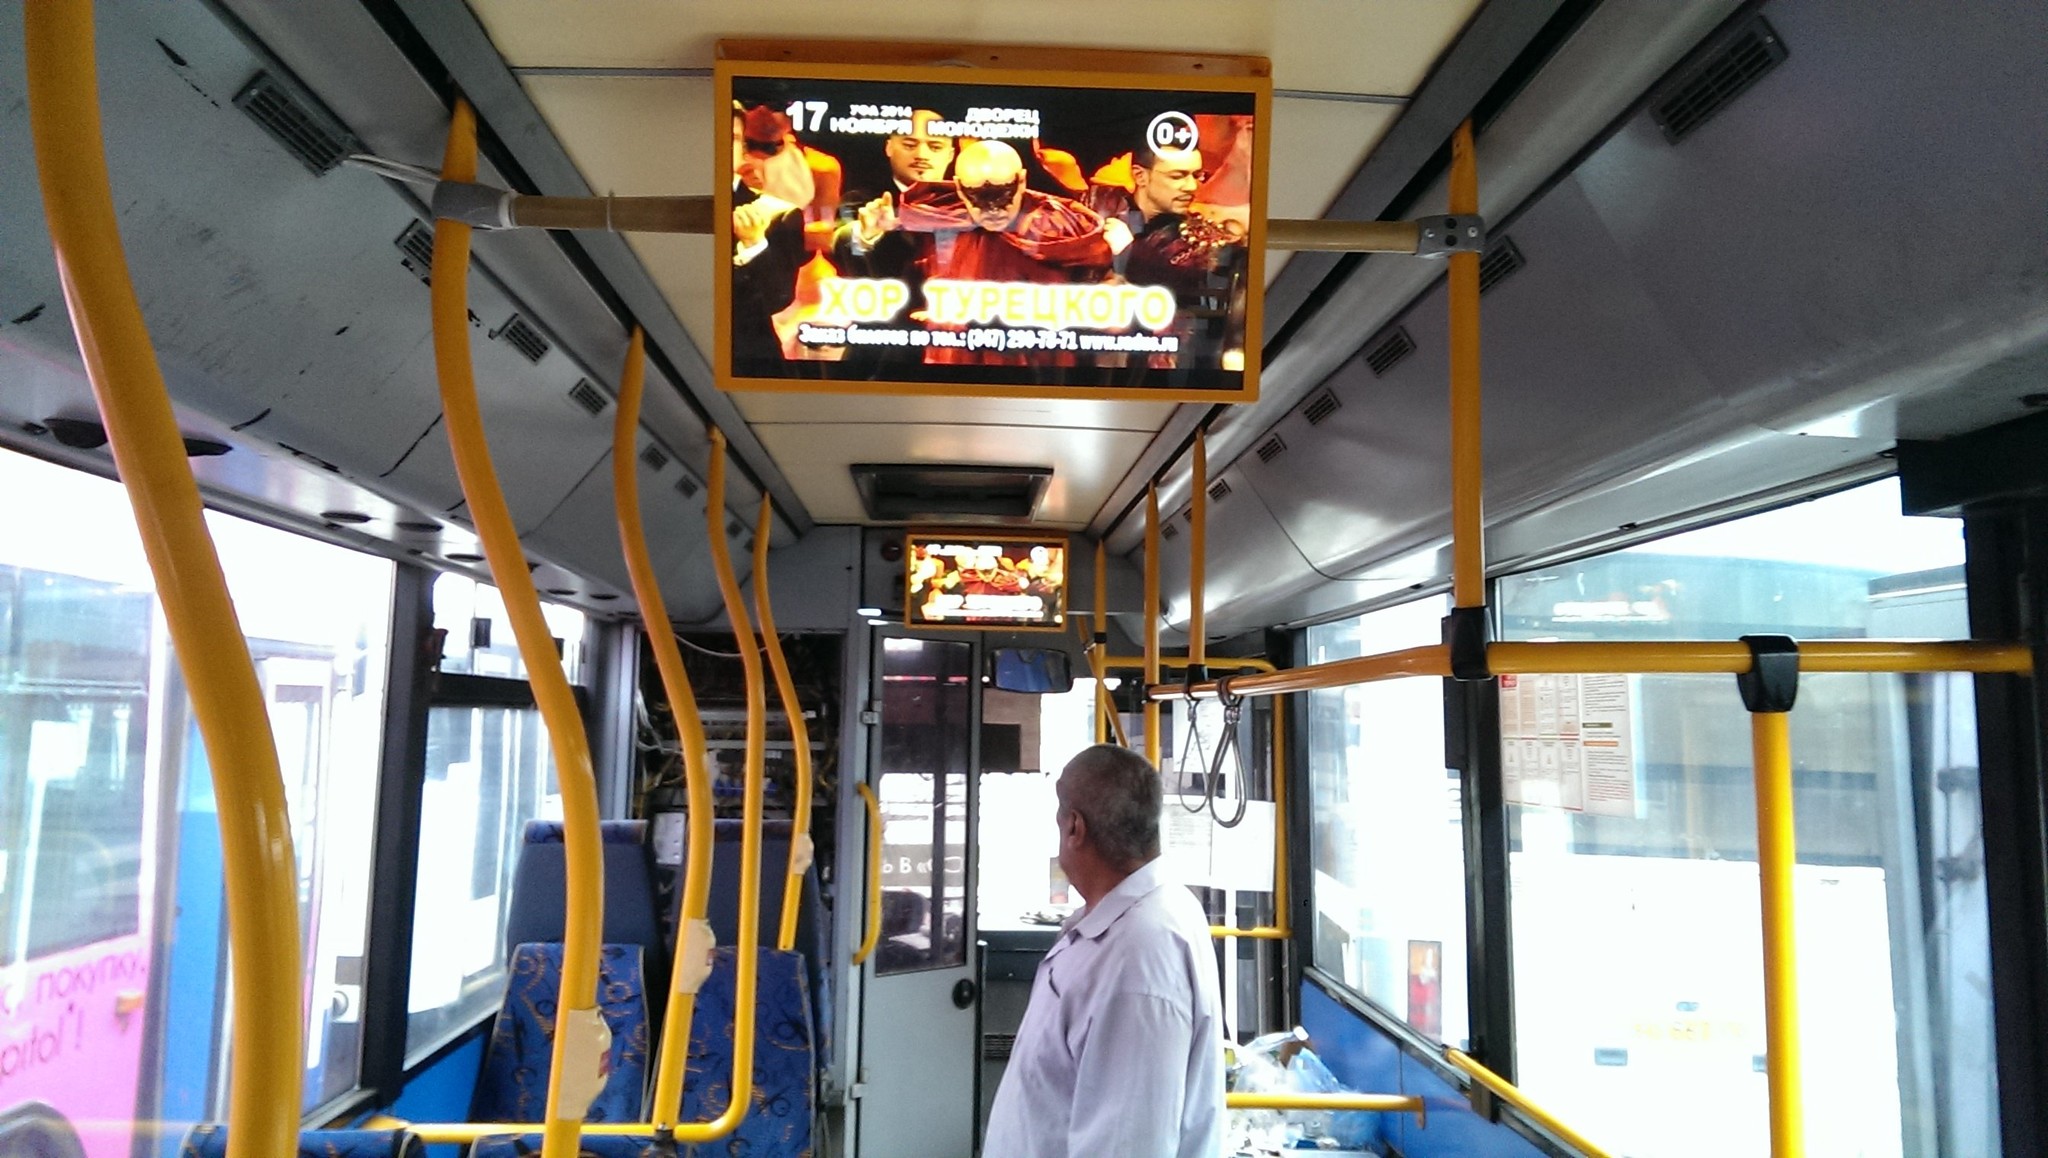 реклама на мониторах в общественном транспорте